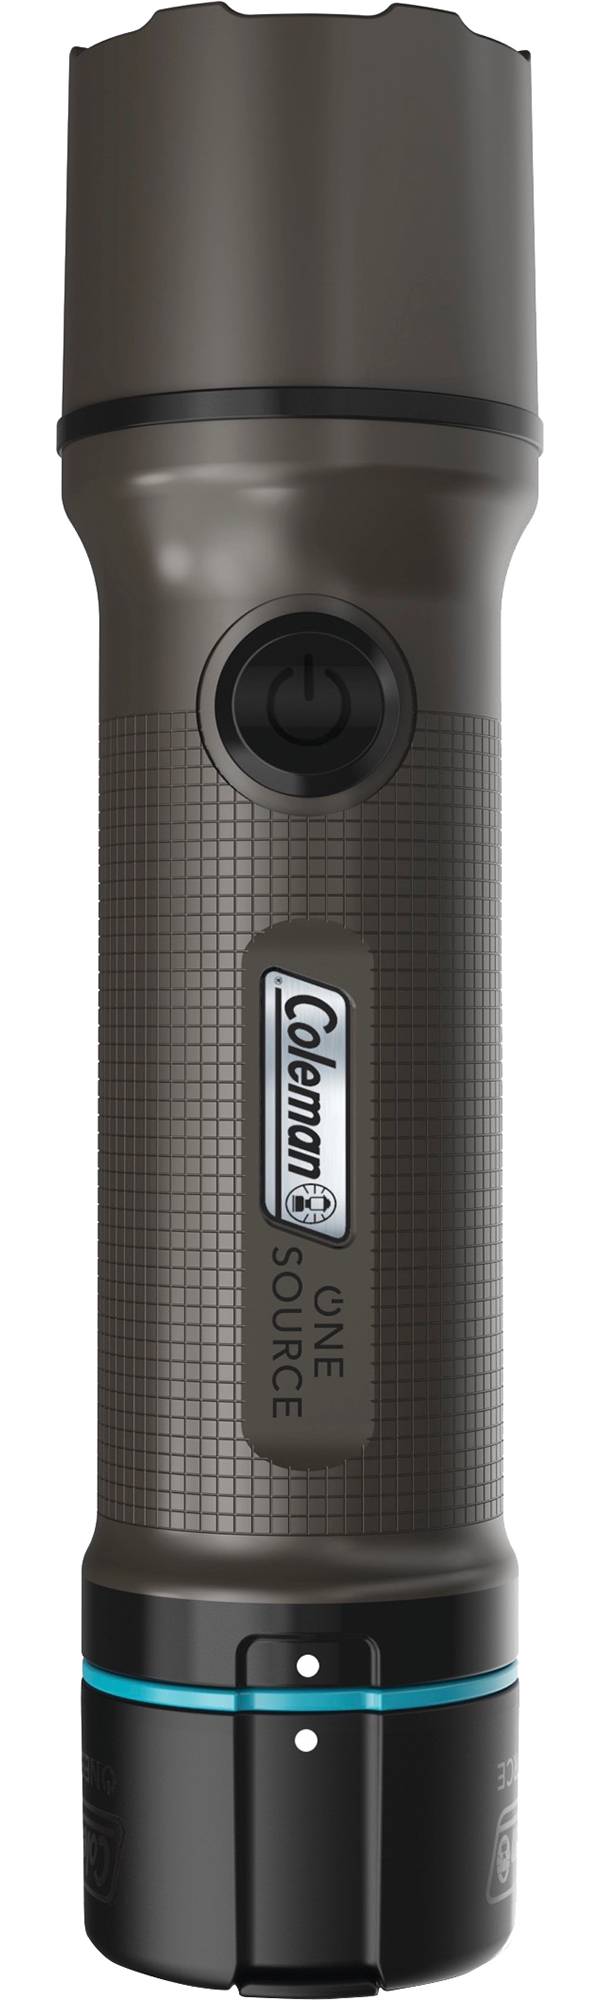 Coleman OneSource 600 Lumen LED Flashlight product image